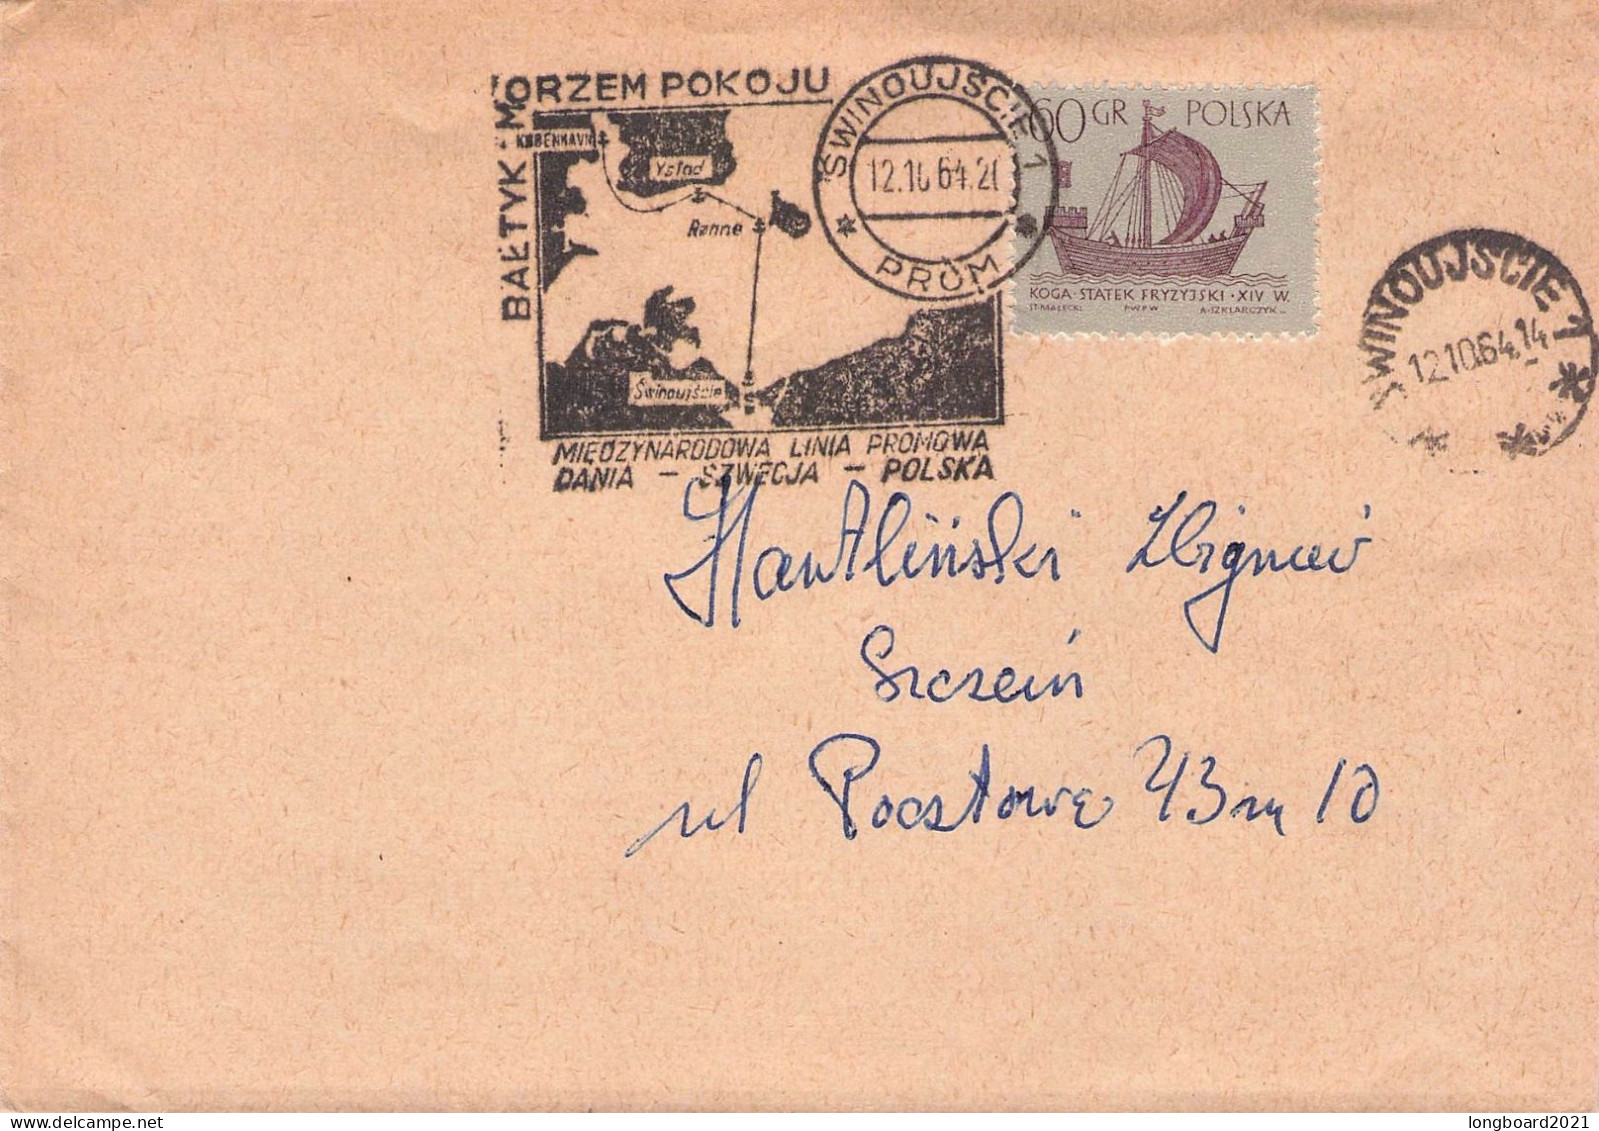 POLAND - SPECIAL CANCELLATION SWINOUJSCIE -FERRY- 1964  / 7018 - Storia Postale